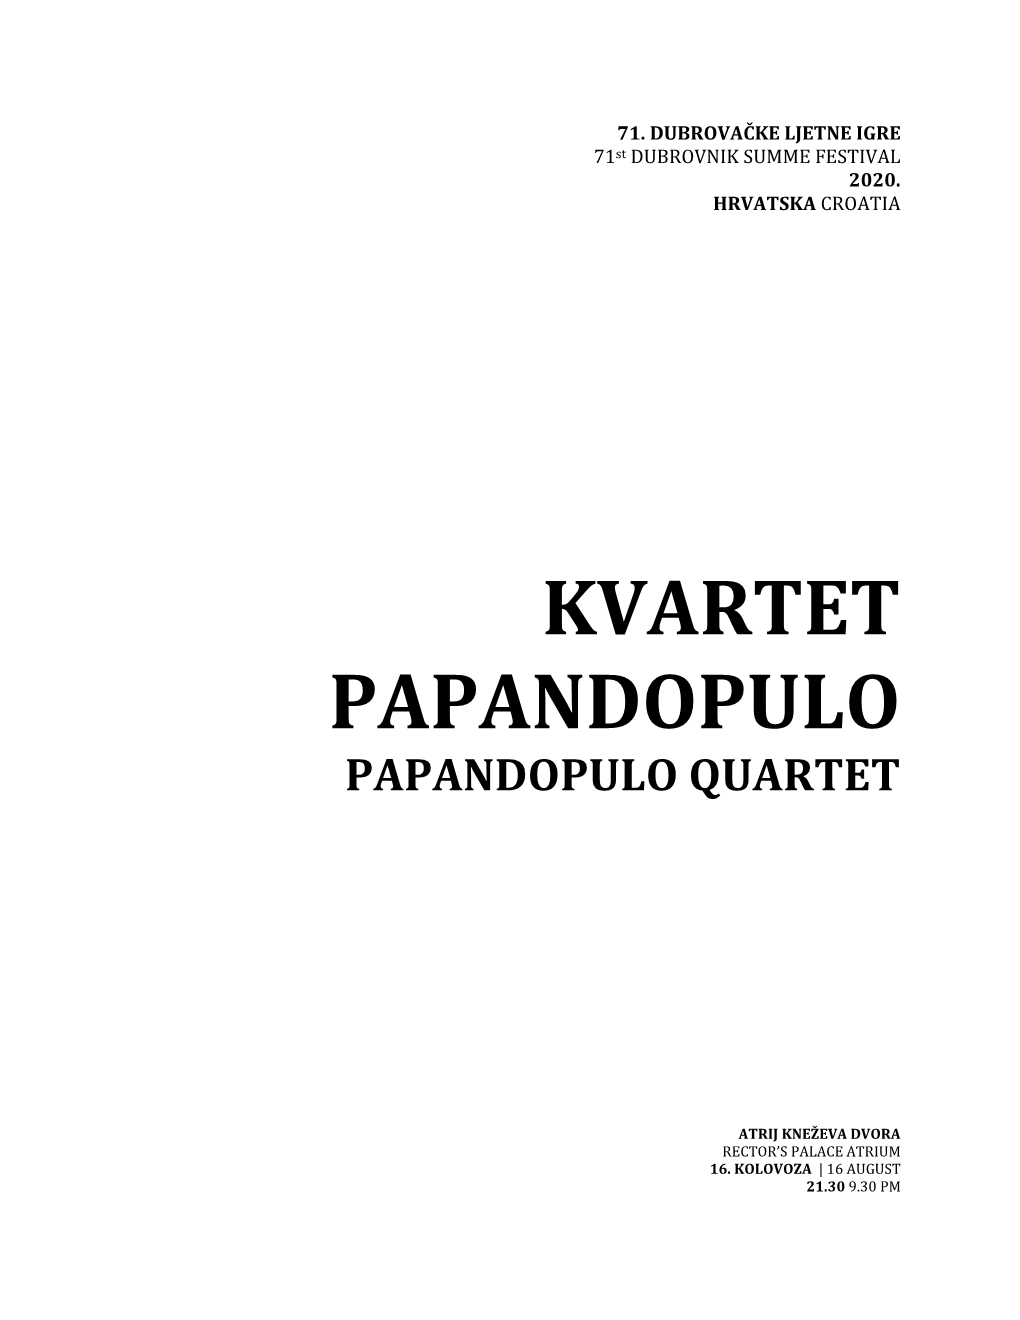 Kvartet Papandopulo Papandopulo Quartet